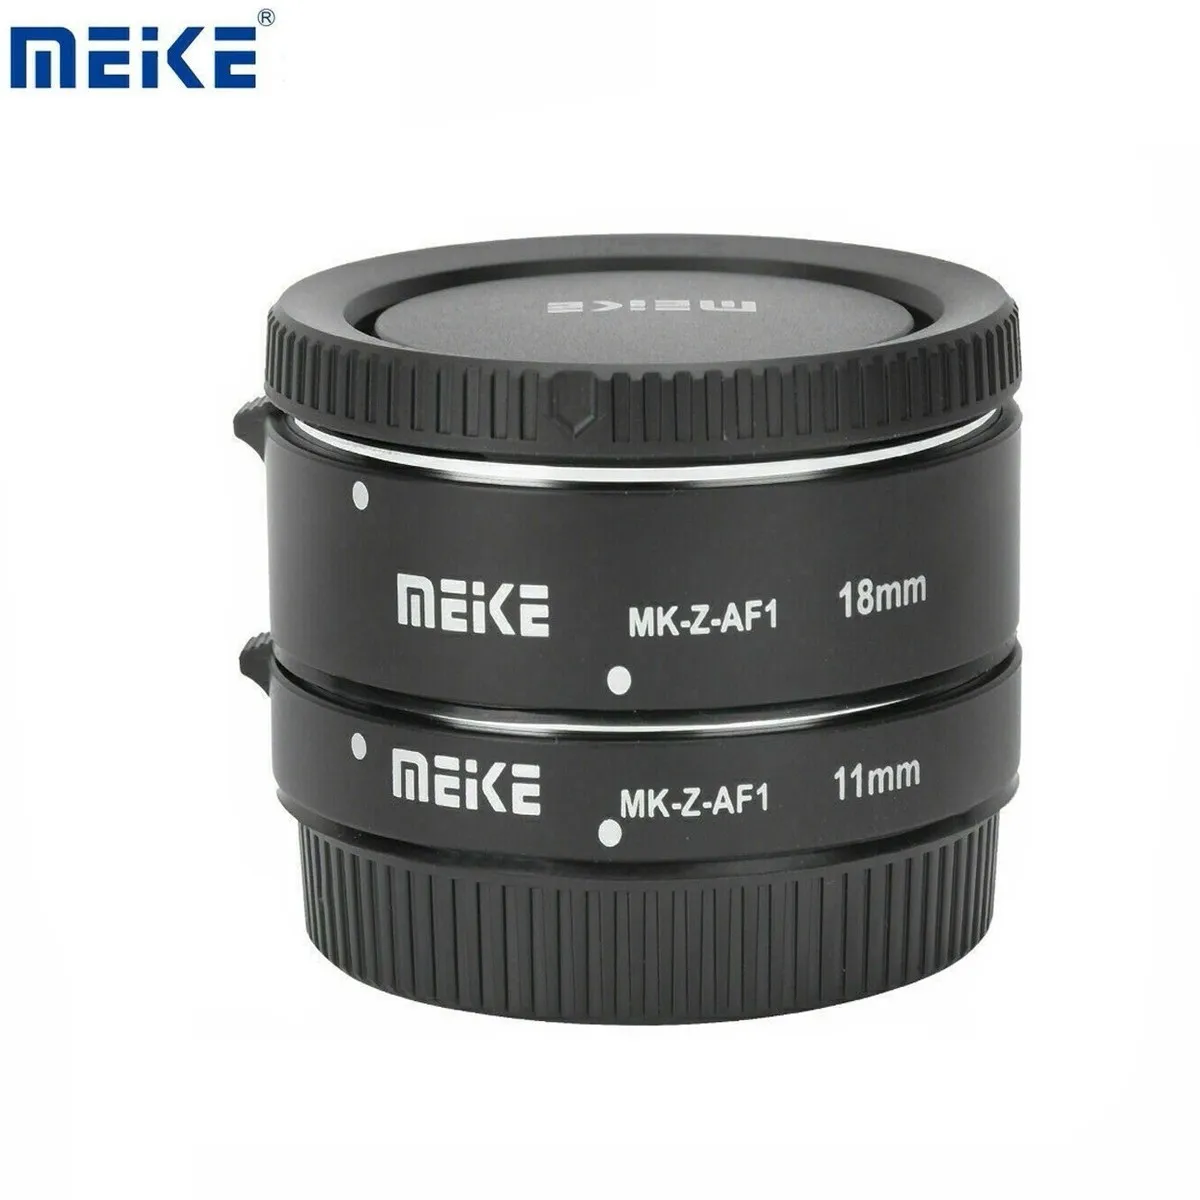 Meike MK-Z-AF1 Metal AF Macro Extension Tube Auto Focus Adapter ring 11mm 18mm for Nikon Z6 Z7